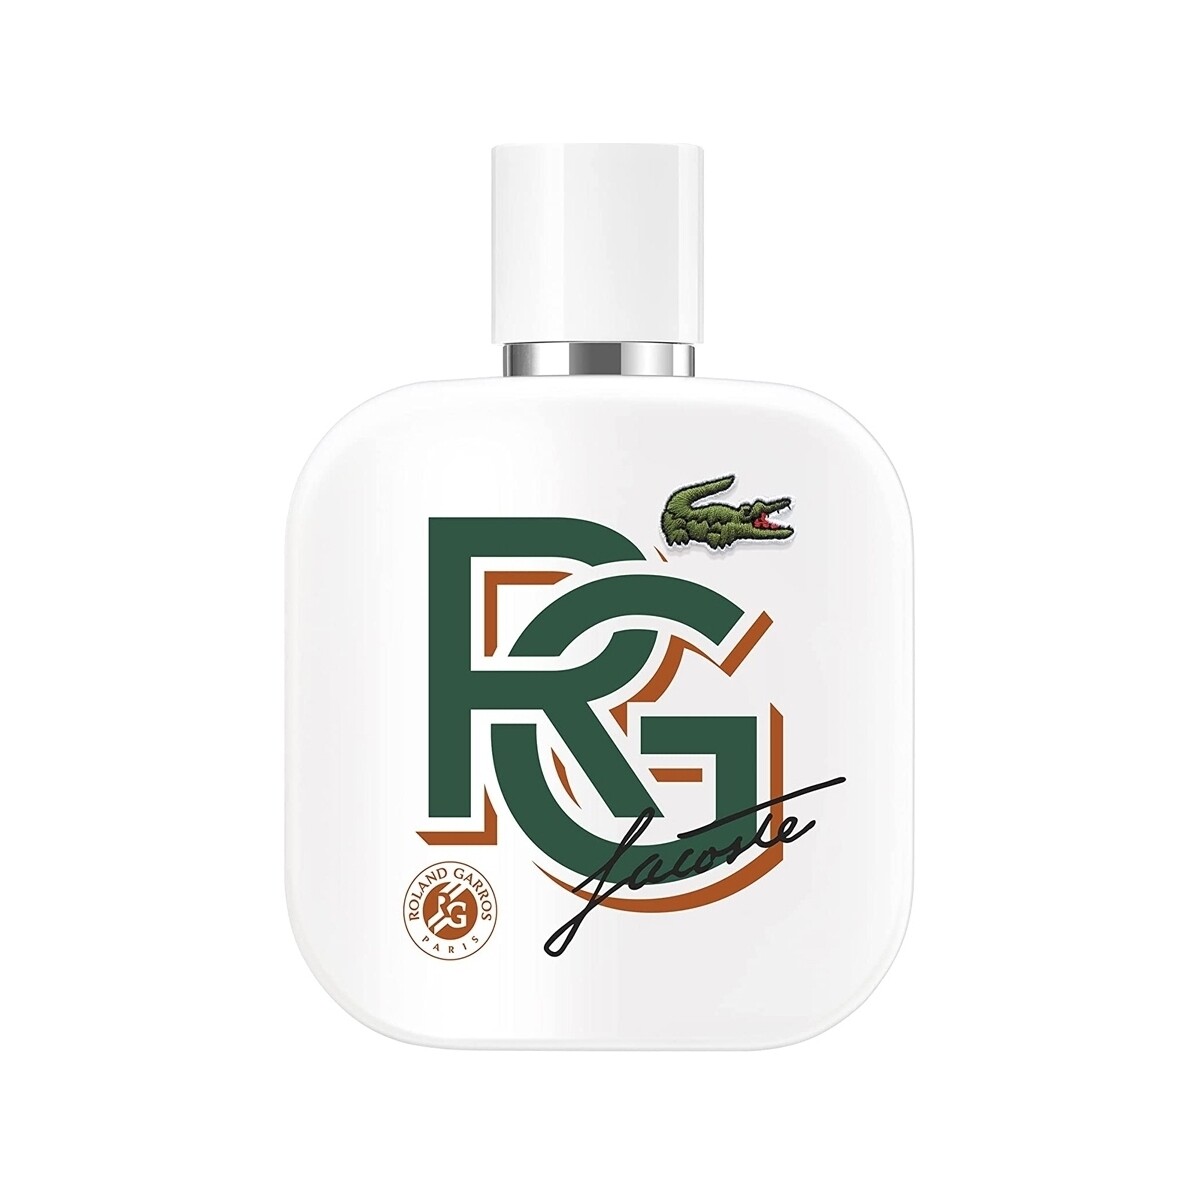 Lacoste L.12.12 Blanc Roland Garros perfume - 90ml L.12.12 Blanc Roland Garros eau de parfum - 90ml JqRs0ivb